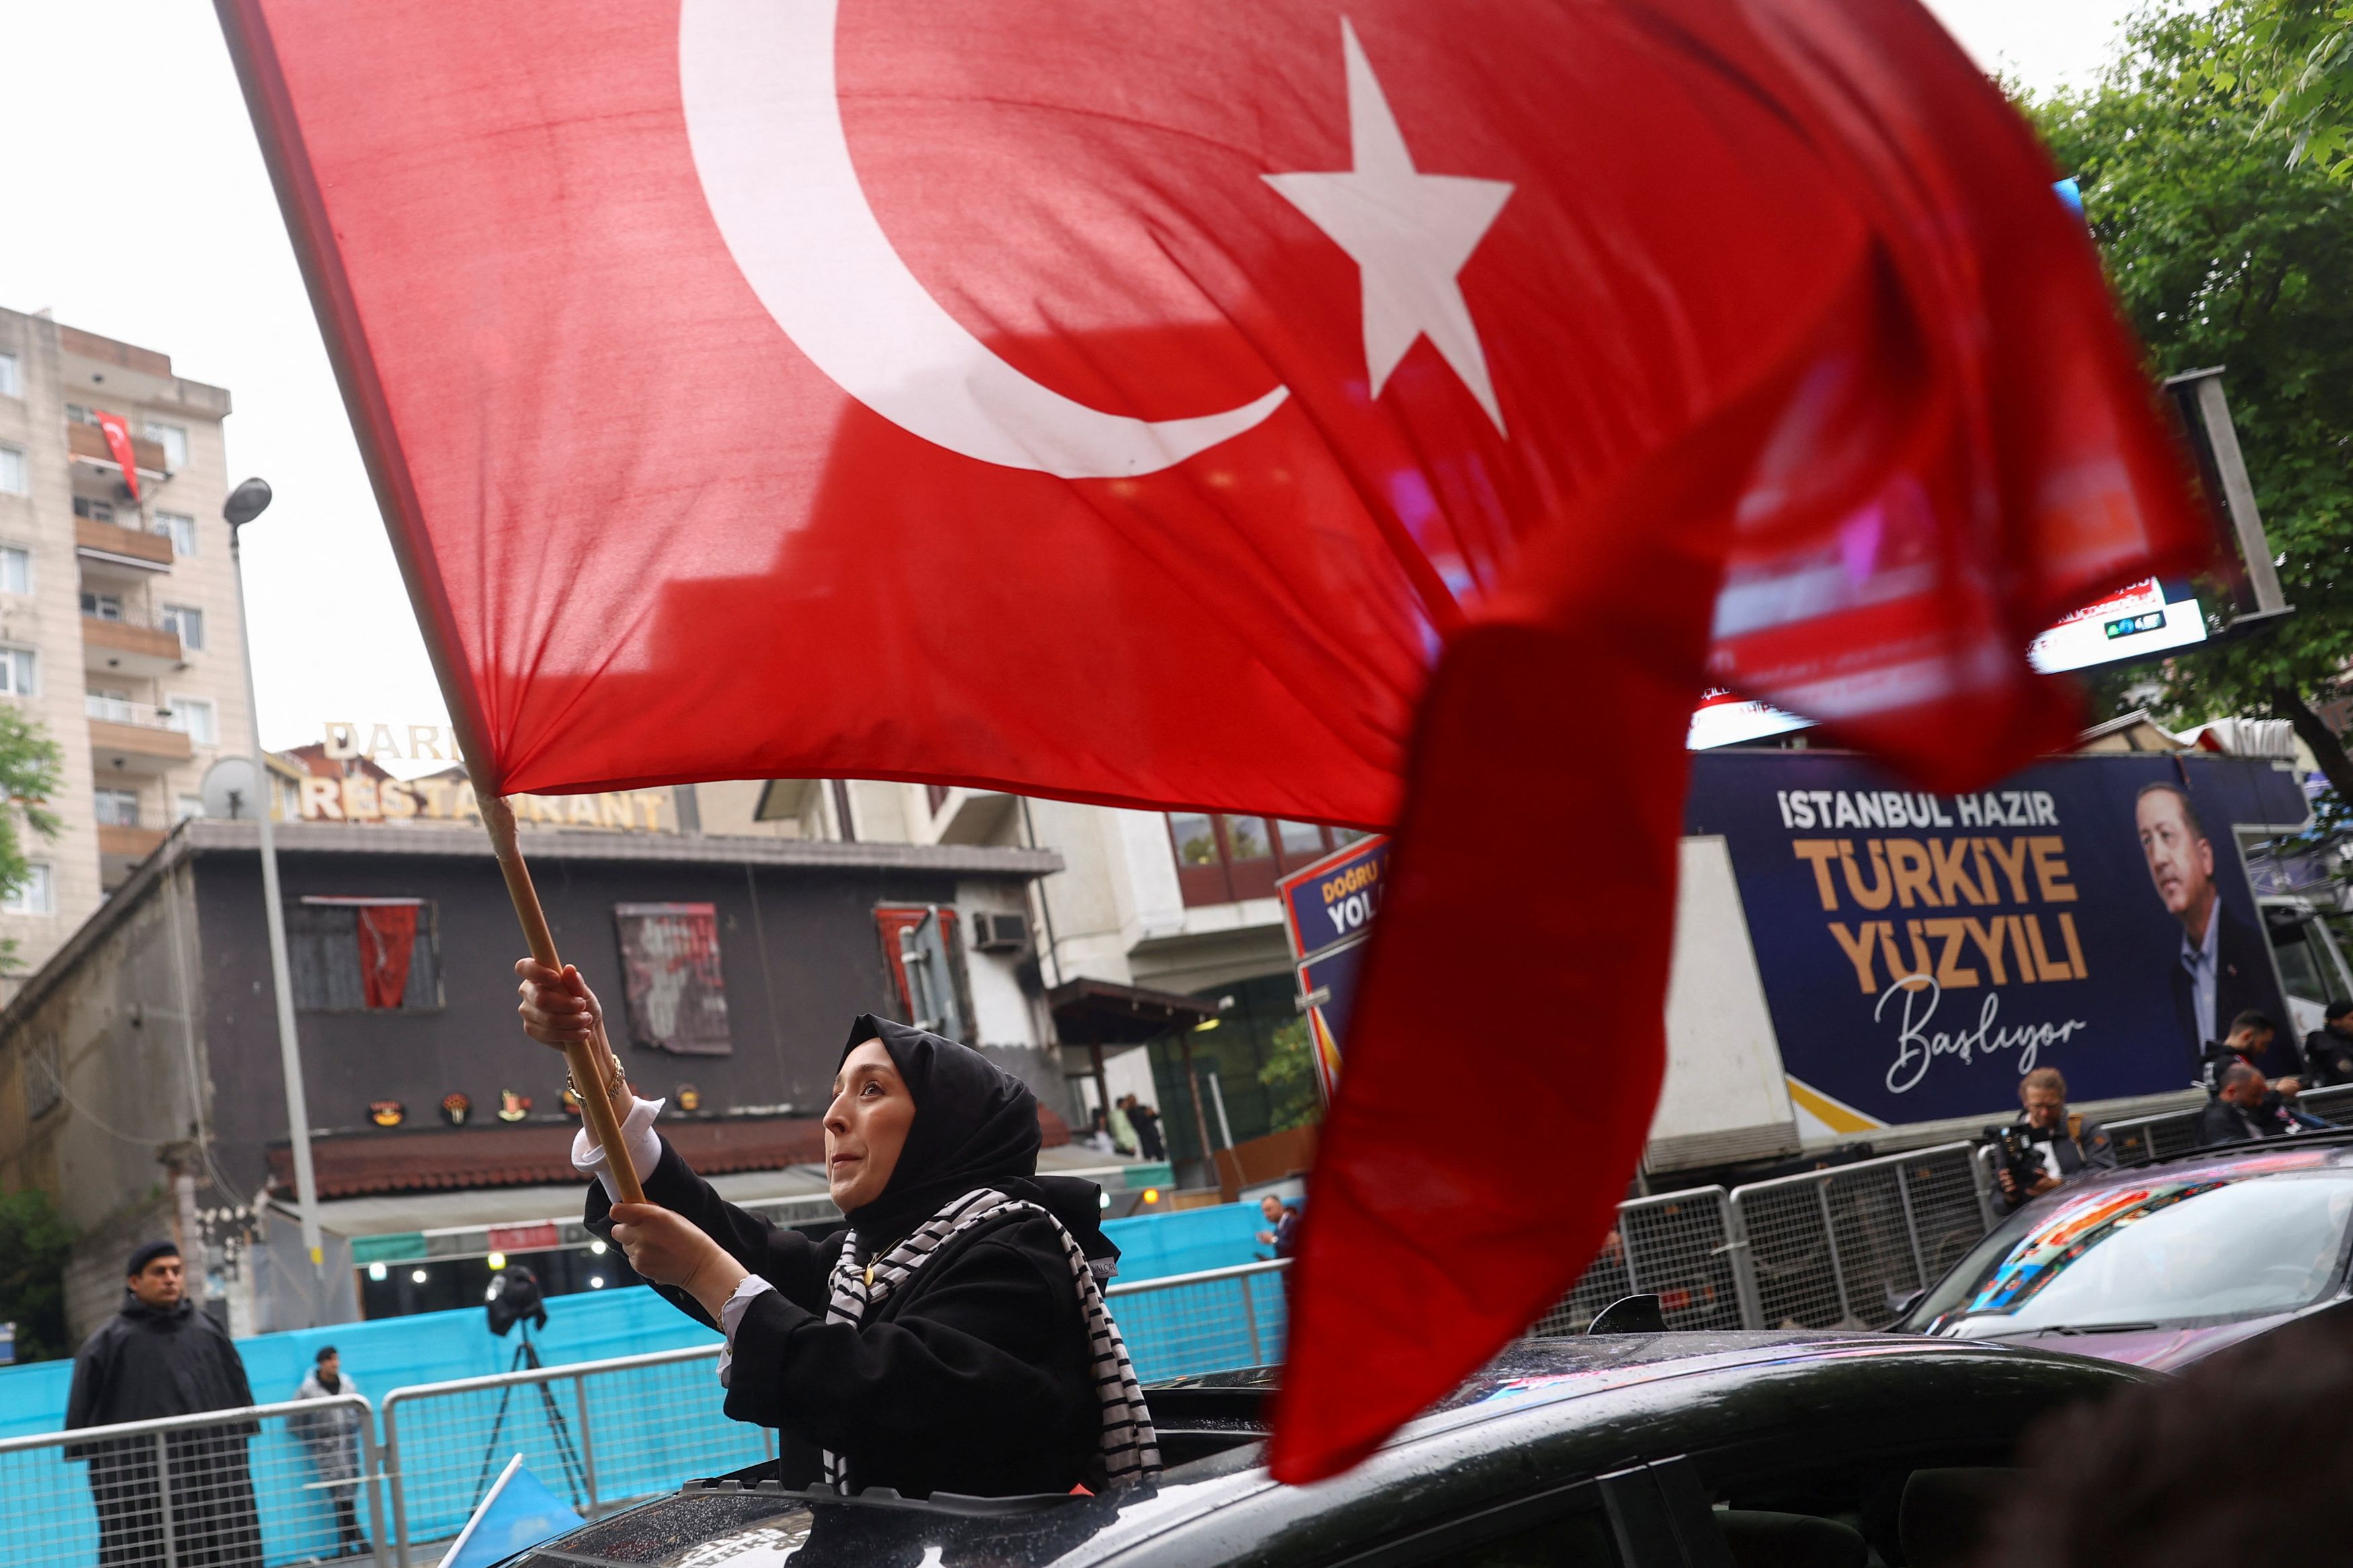 Το ζοφώδες και ασέληνο μέλλον της Τουρκίας